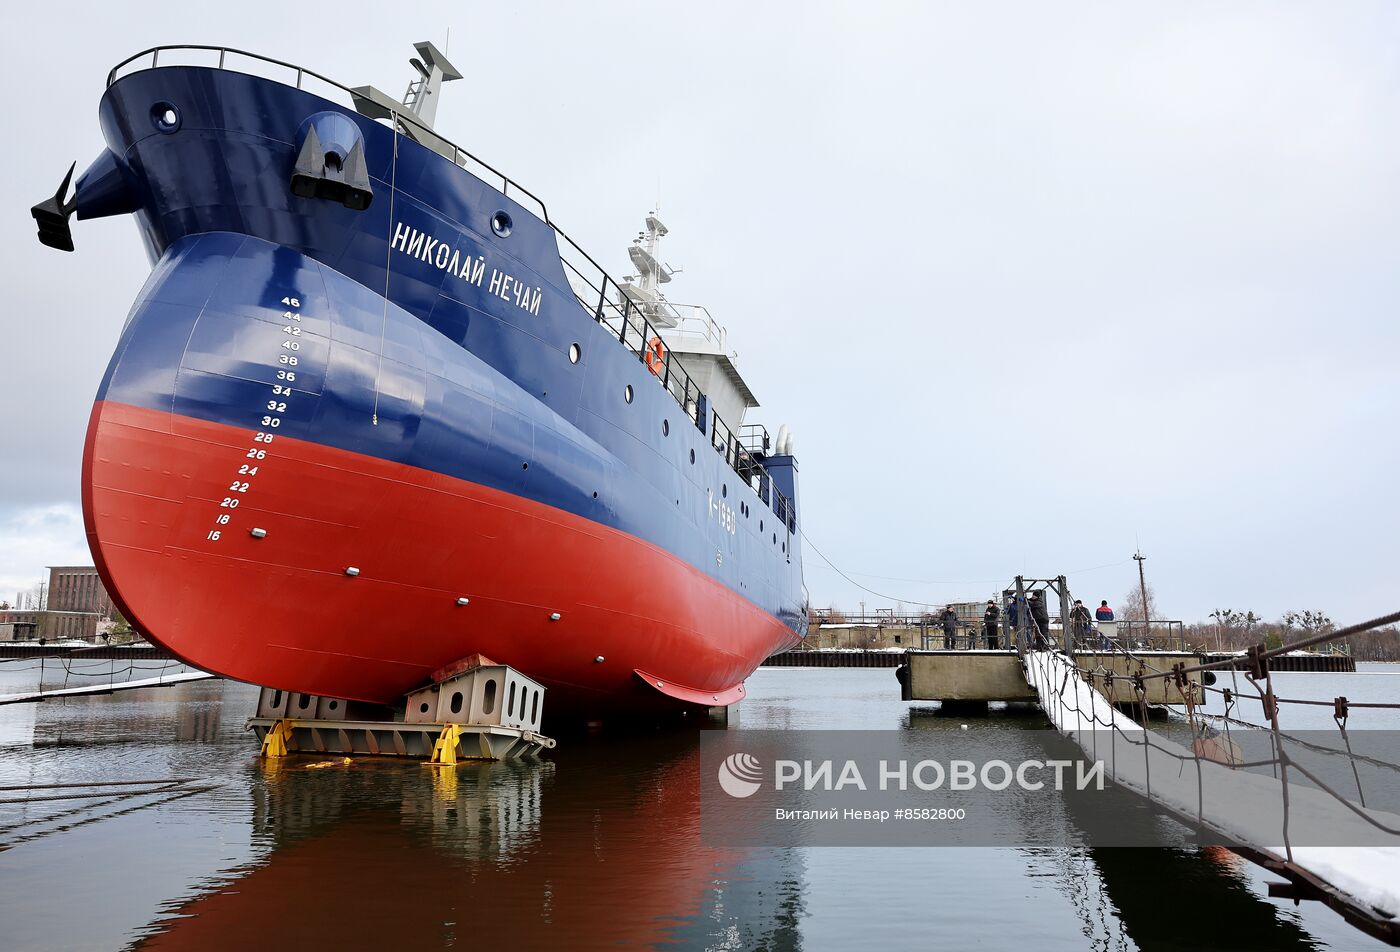 Спуск на воду нового рыболовецкого судна "Николай Нечай" в Калининградской области